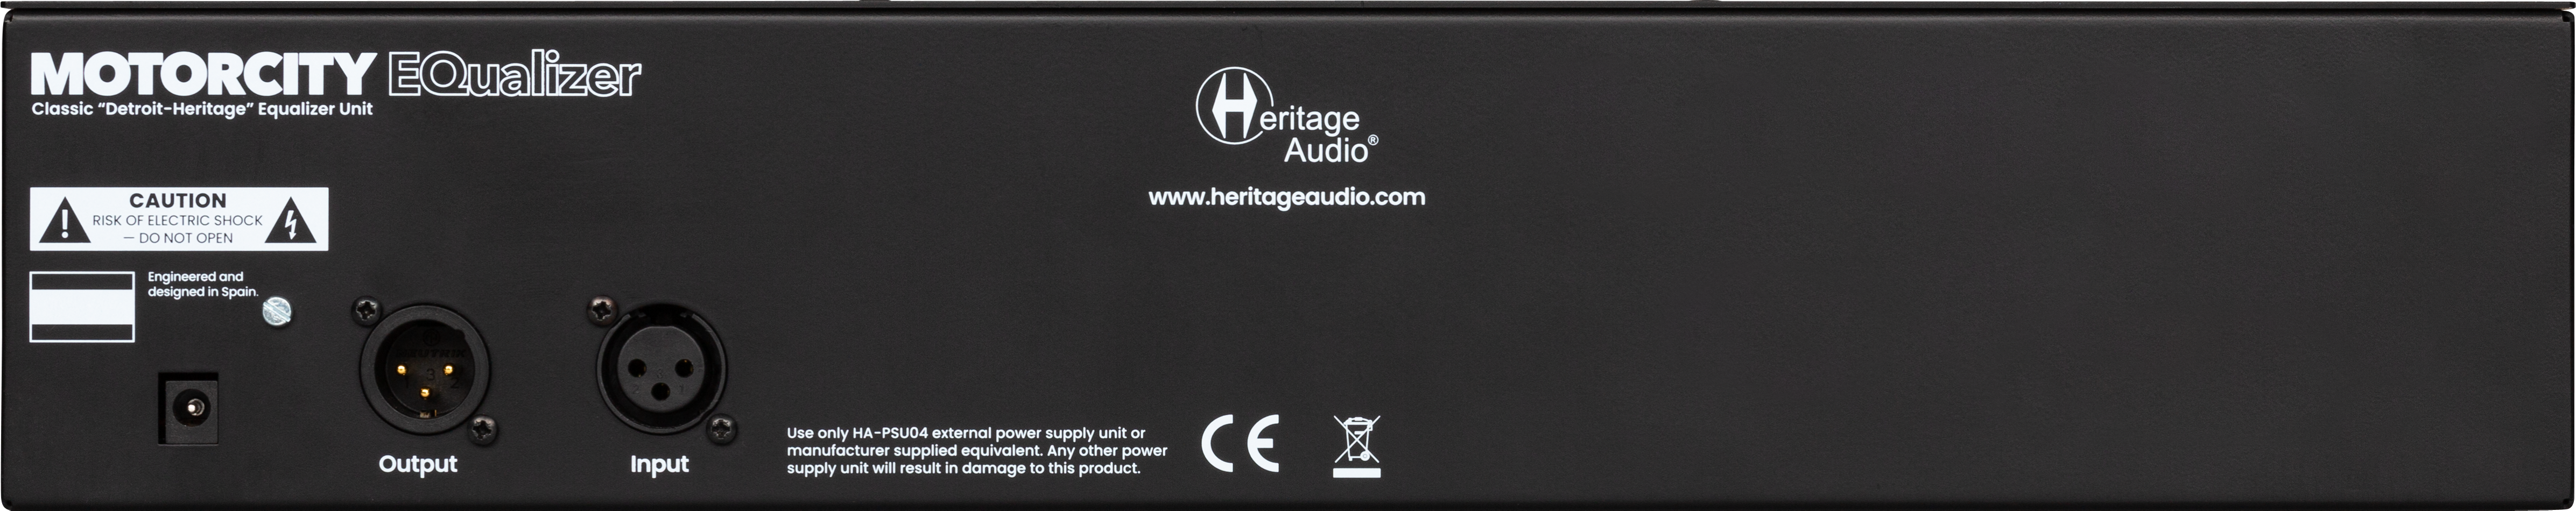 Heritage Audio MOTOR CITY EQ